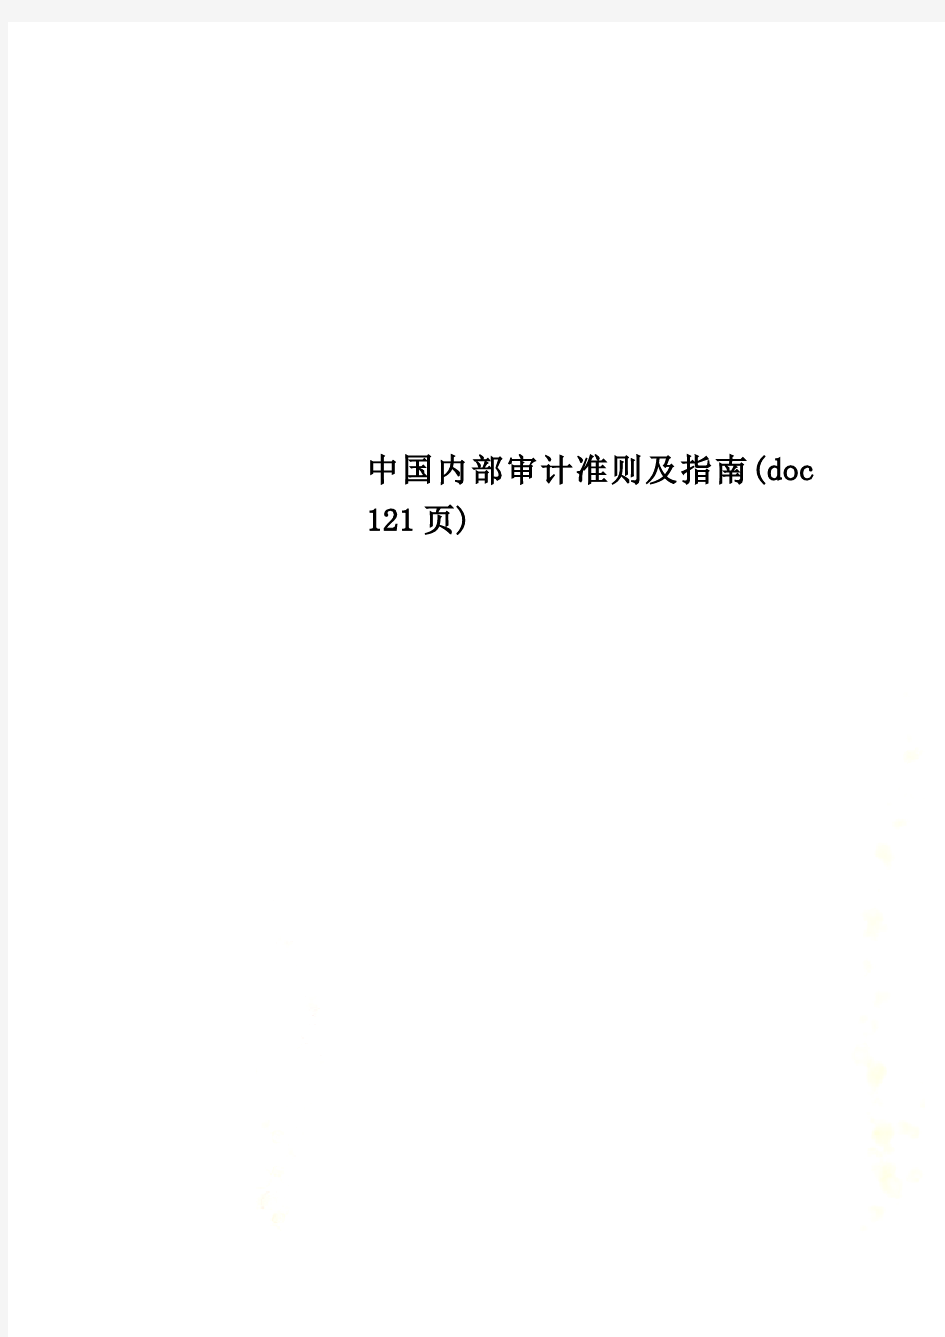 中国内部审计准则及指南(doc 121页)